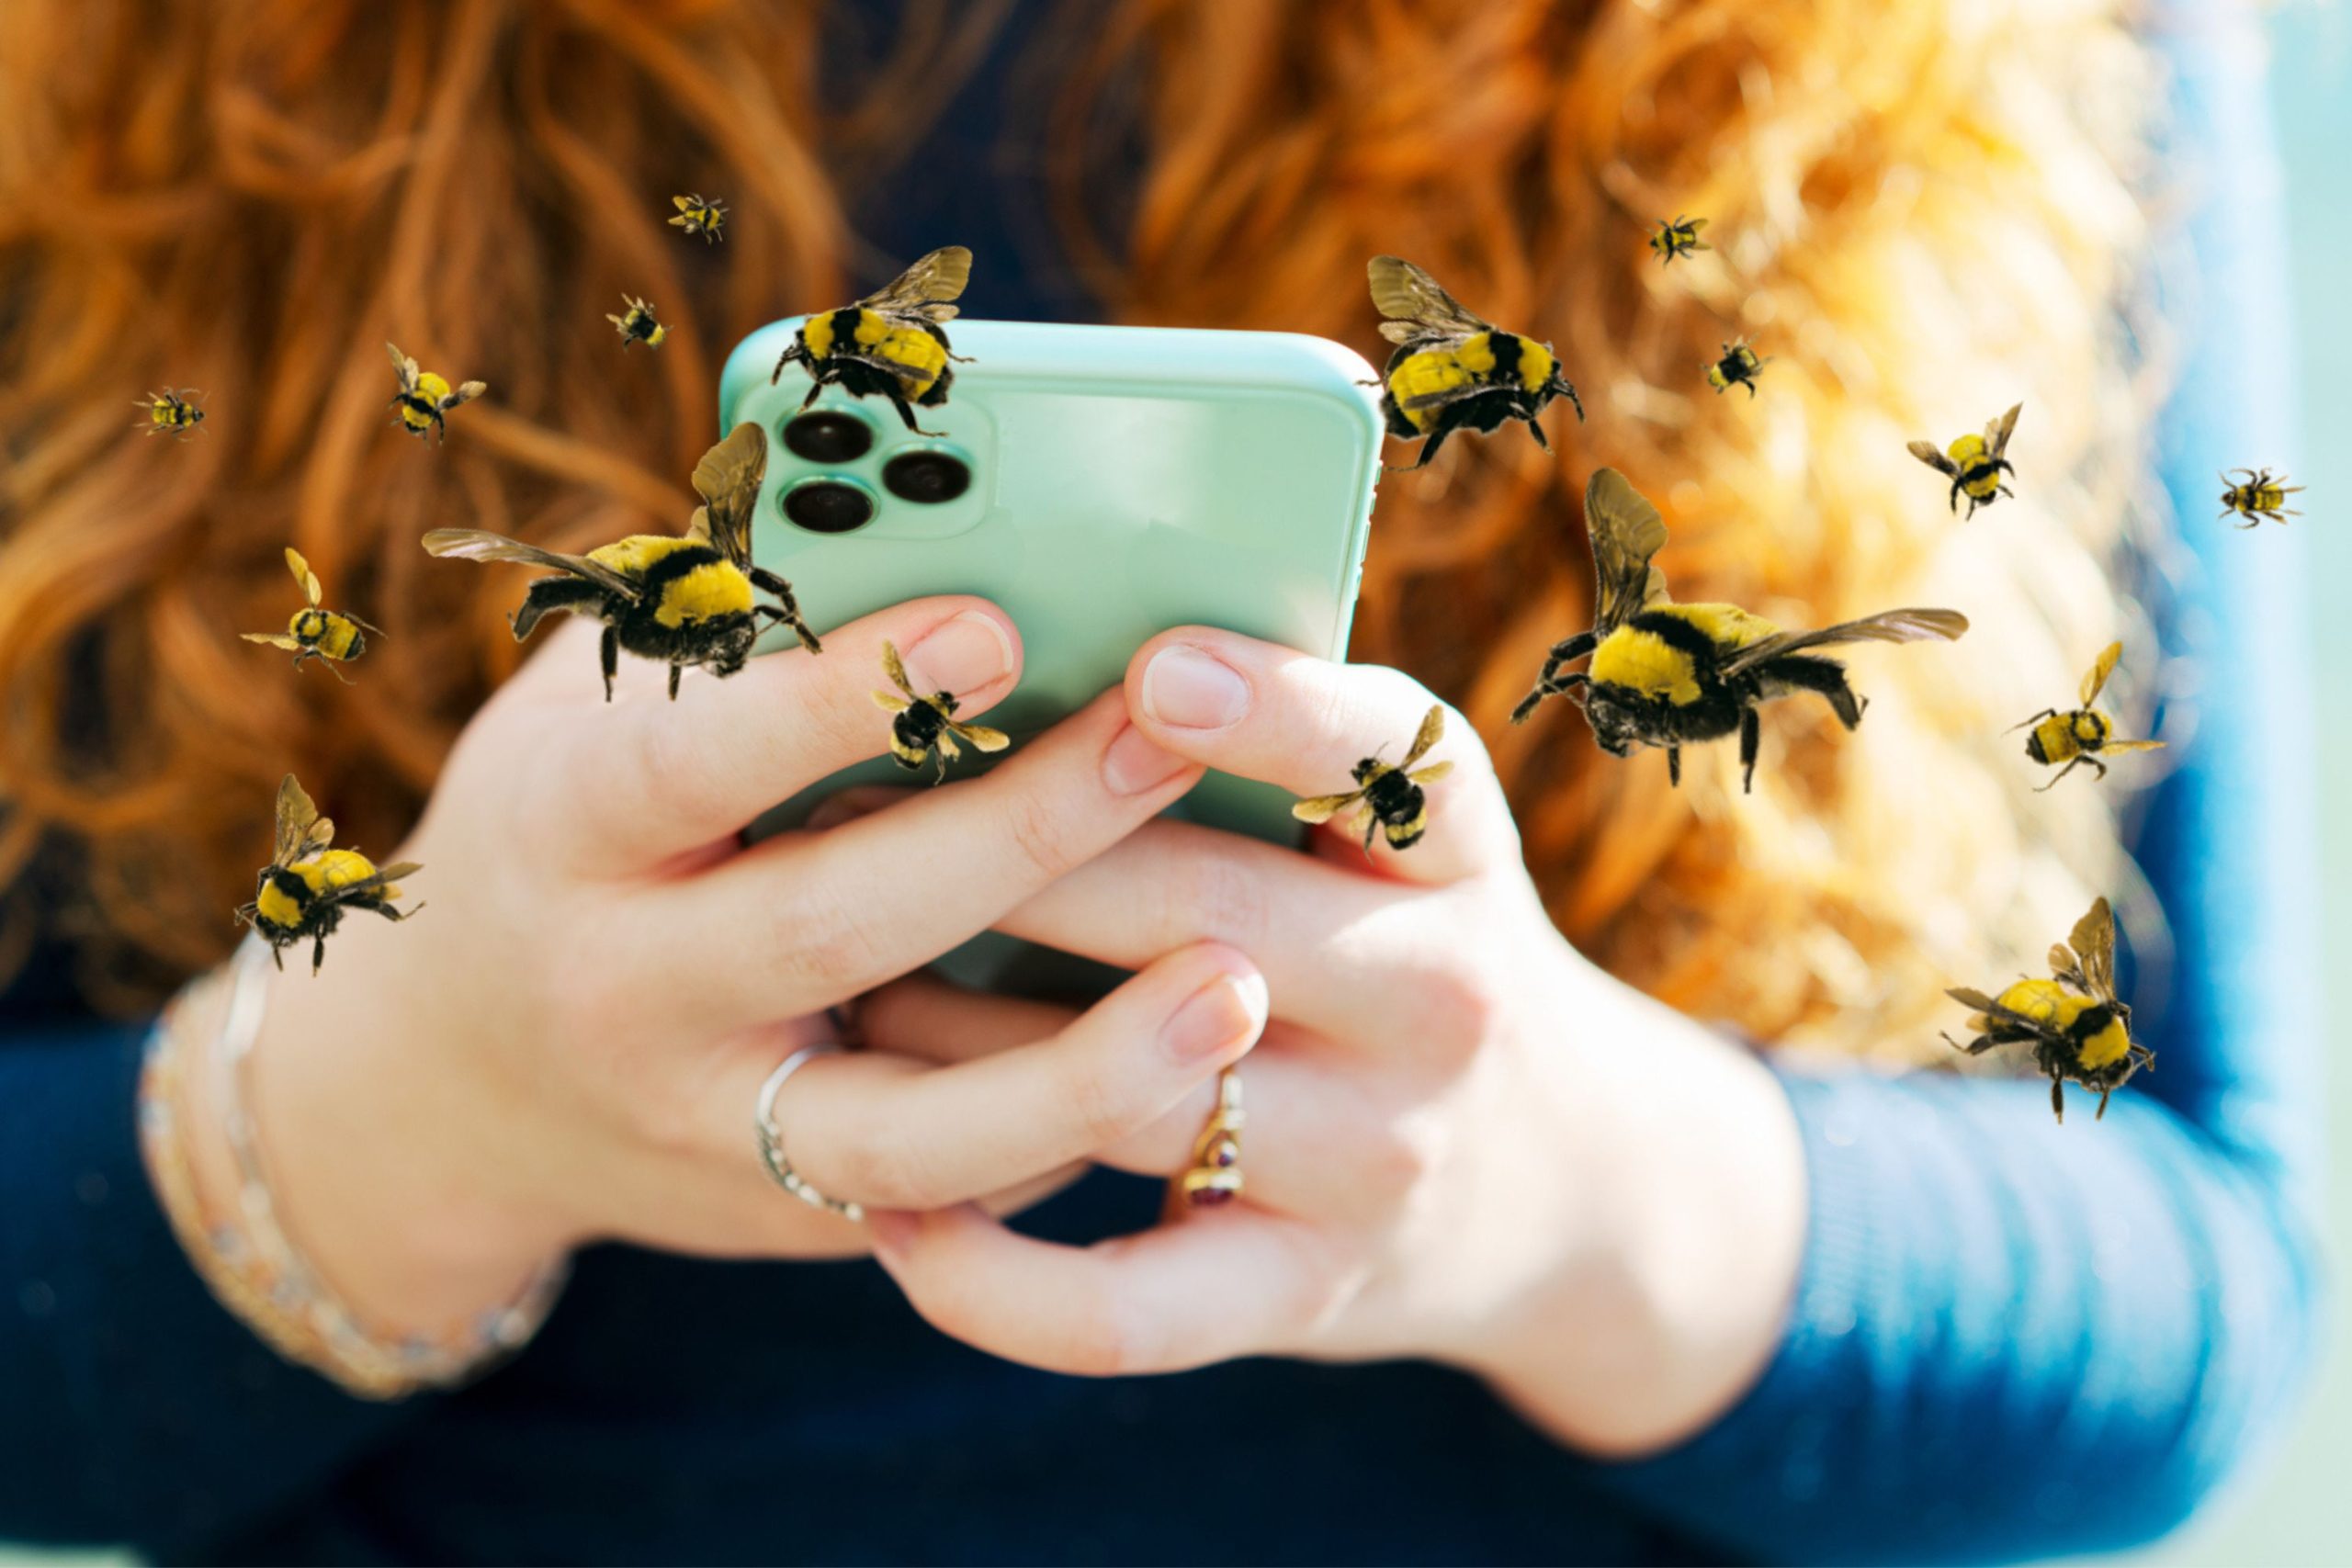 Egy telefonos applikációval mi is szorgos méhekként tehetünk a bolygóért